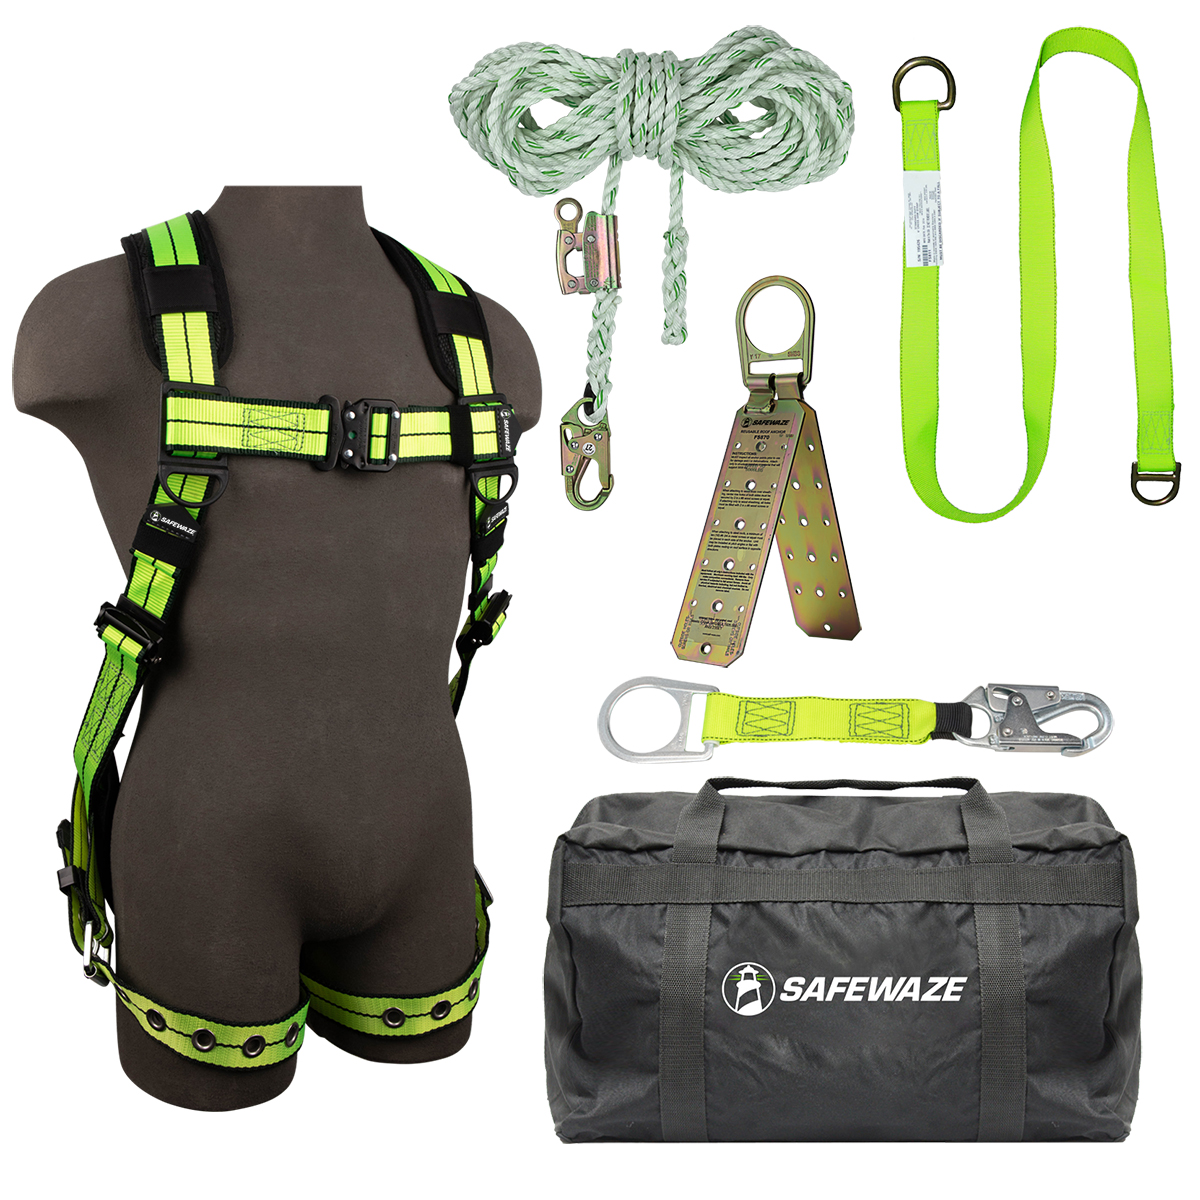 SafeWaze PRO+ Bag Roof Kit: FS-FLEX185-S/M, FS700-50GA, FS813, FS811-20, FS870, FS8175